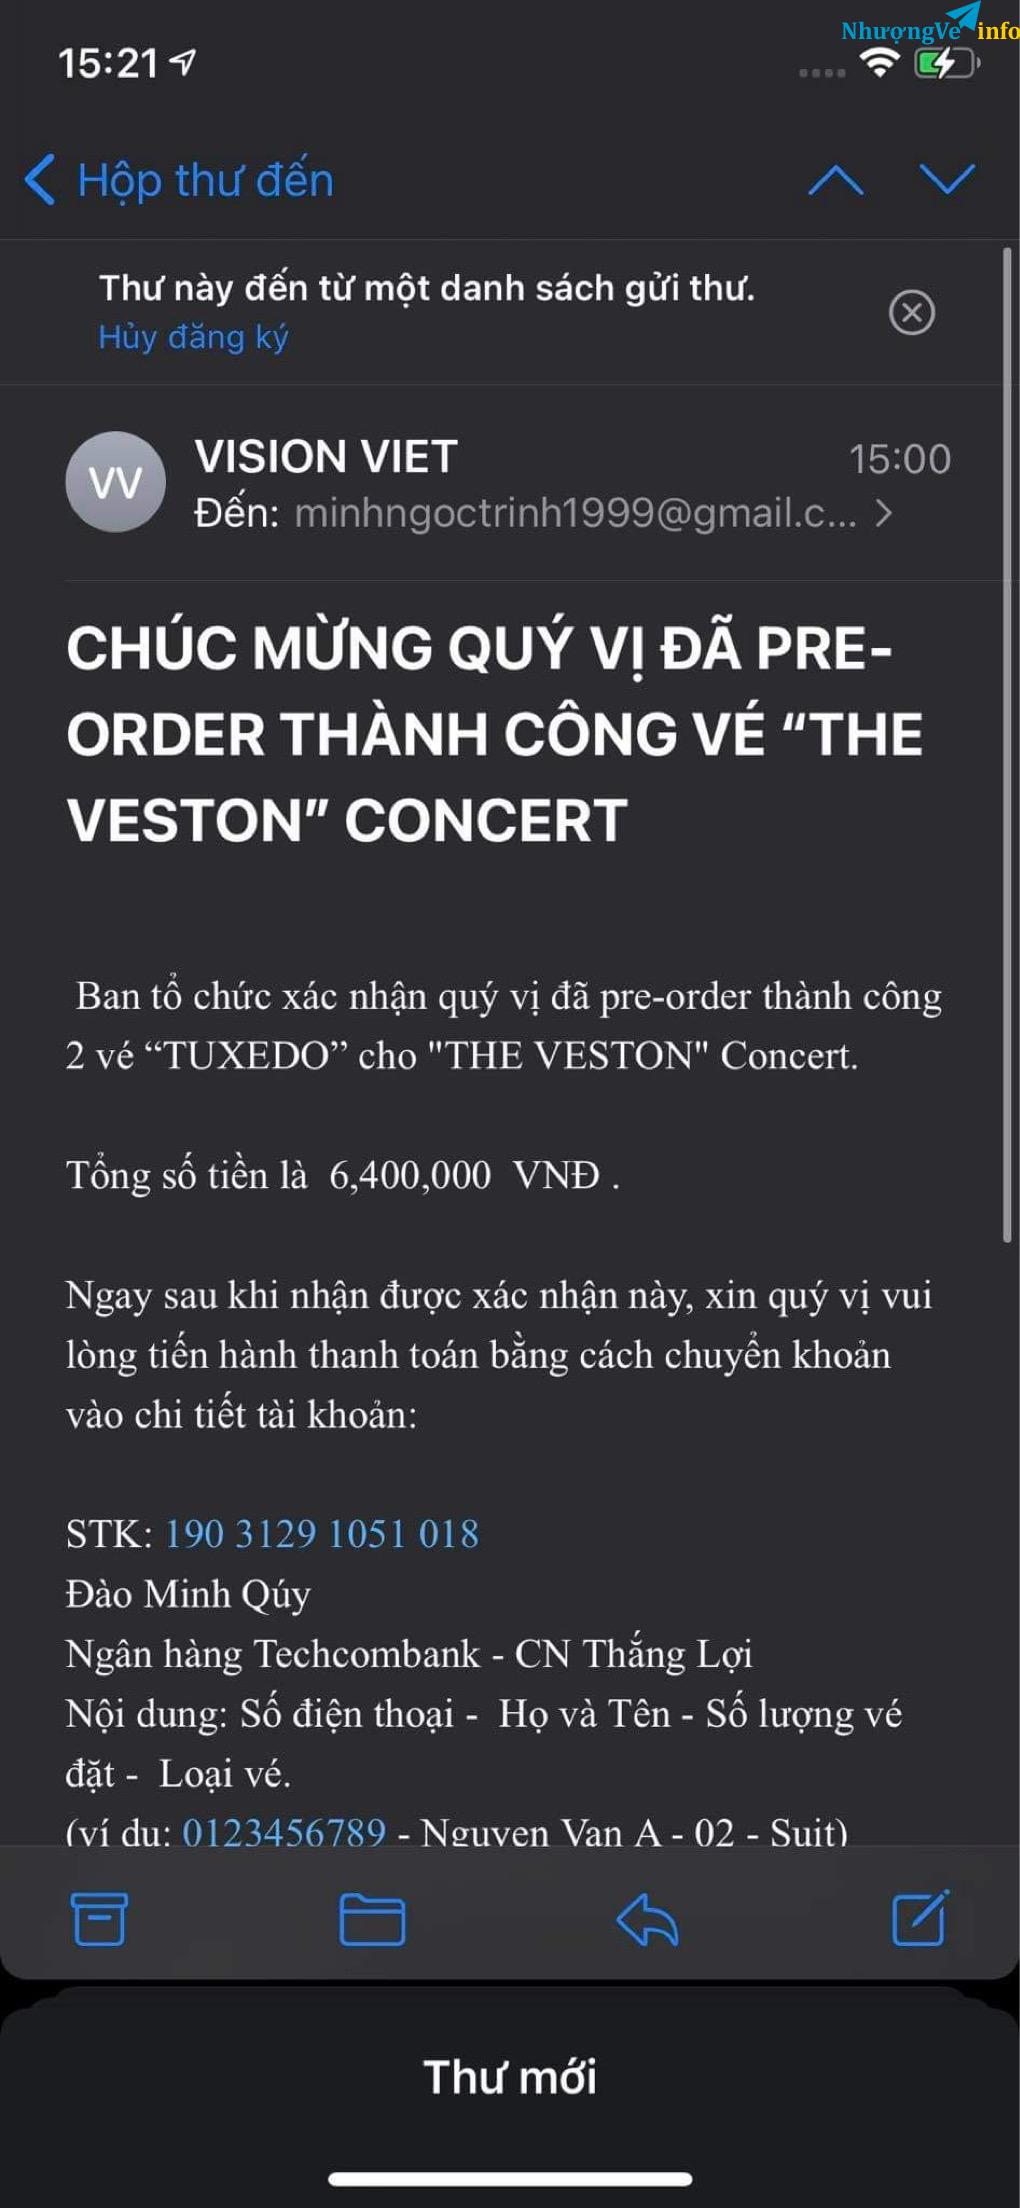 Ảnh 2 vé tuxedo Hà Anh Tuấn concert